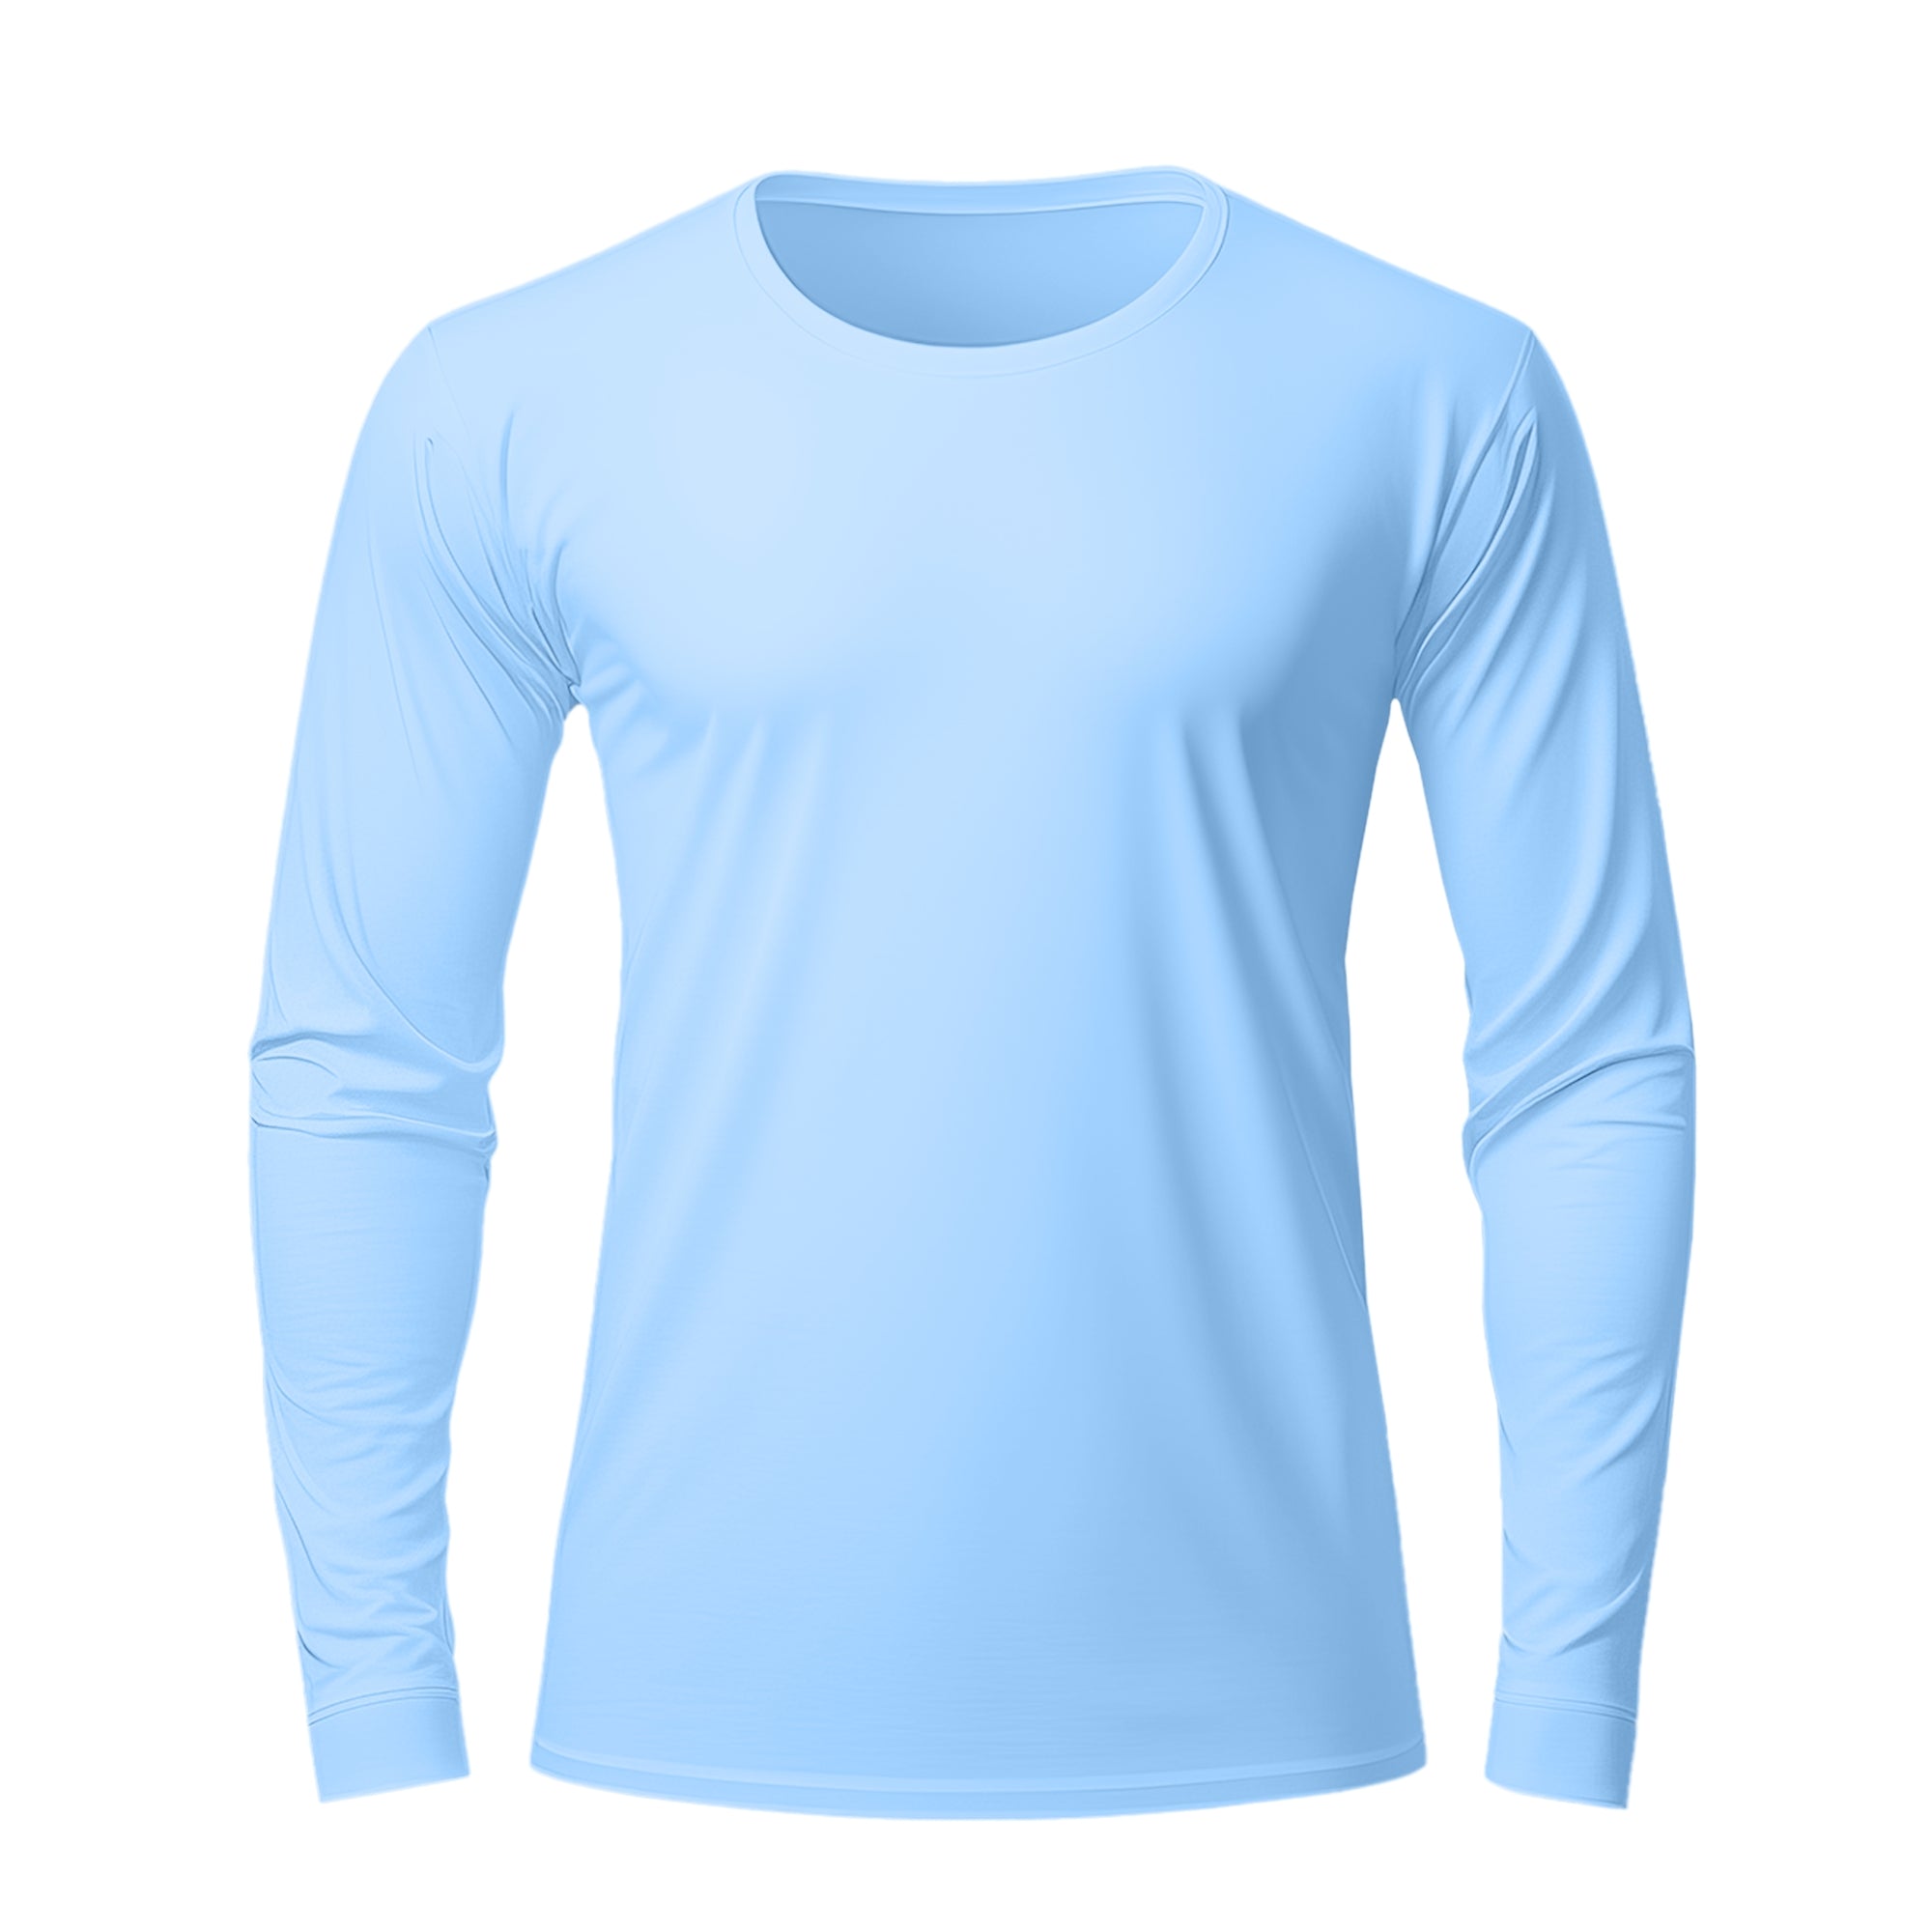 Full Ice Blue T-Shirt For Men